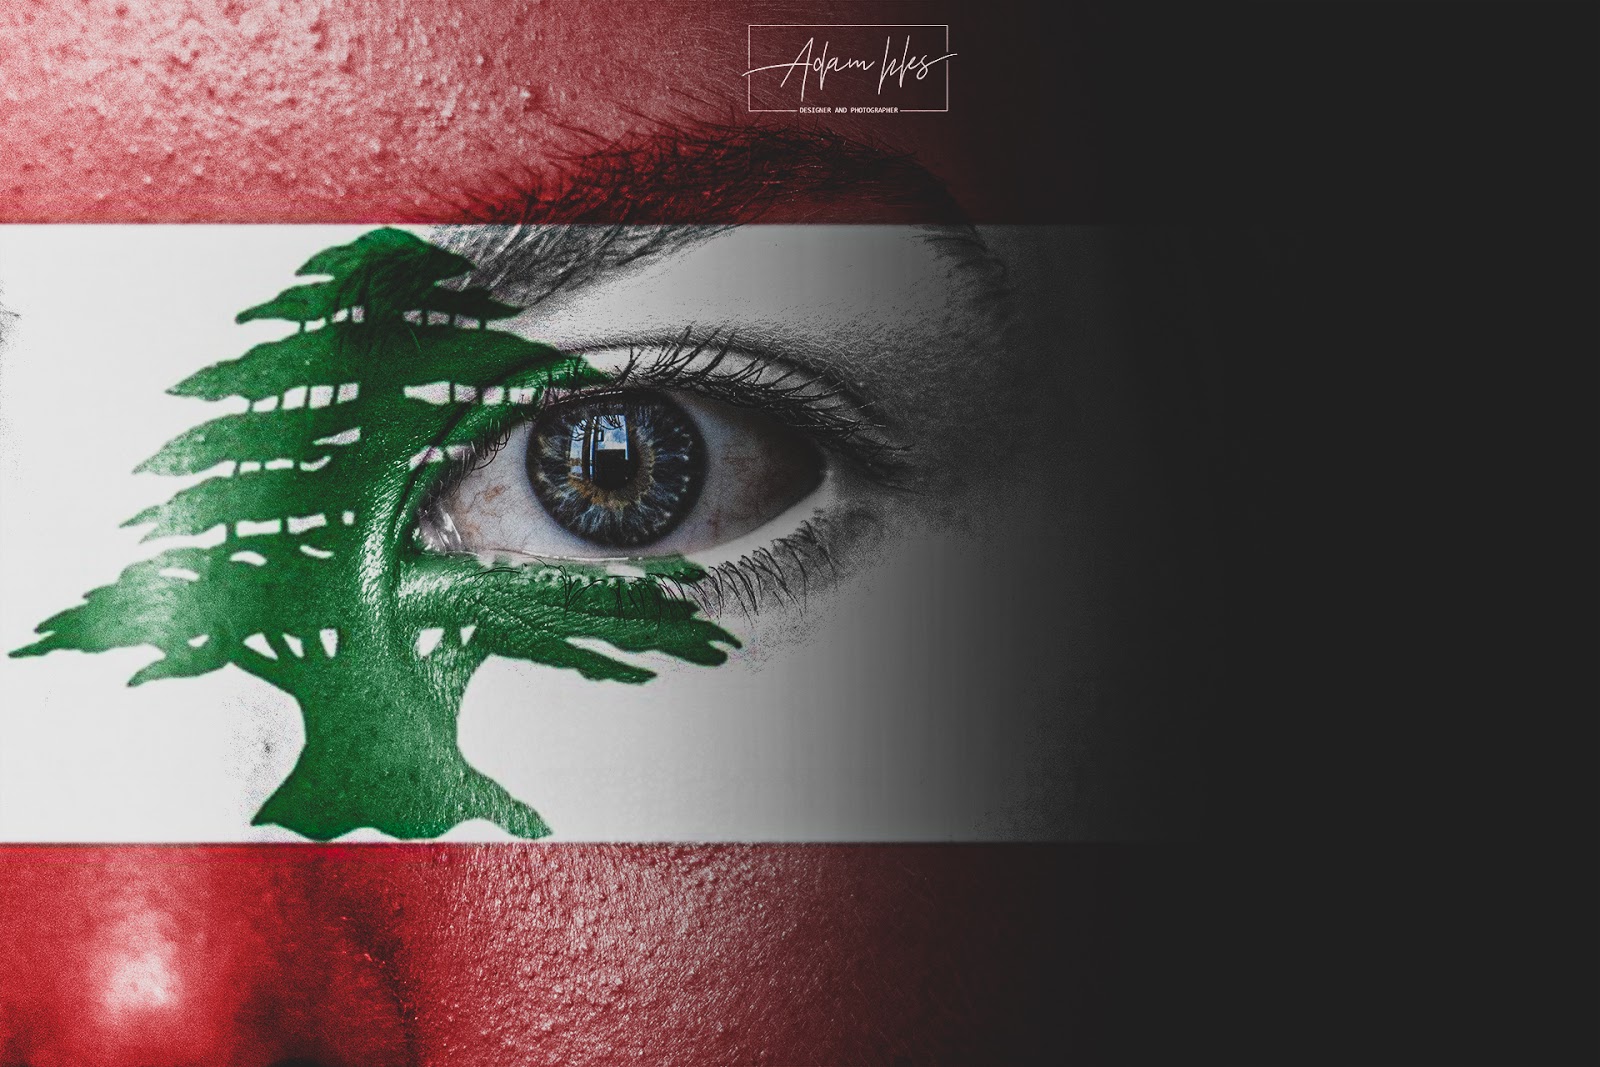 Lebanon Flag Wallpapers